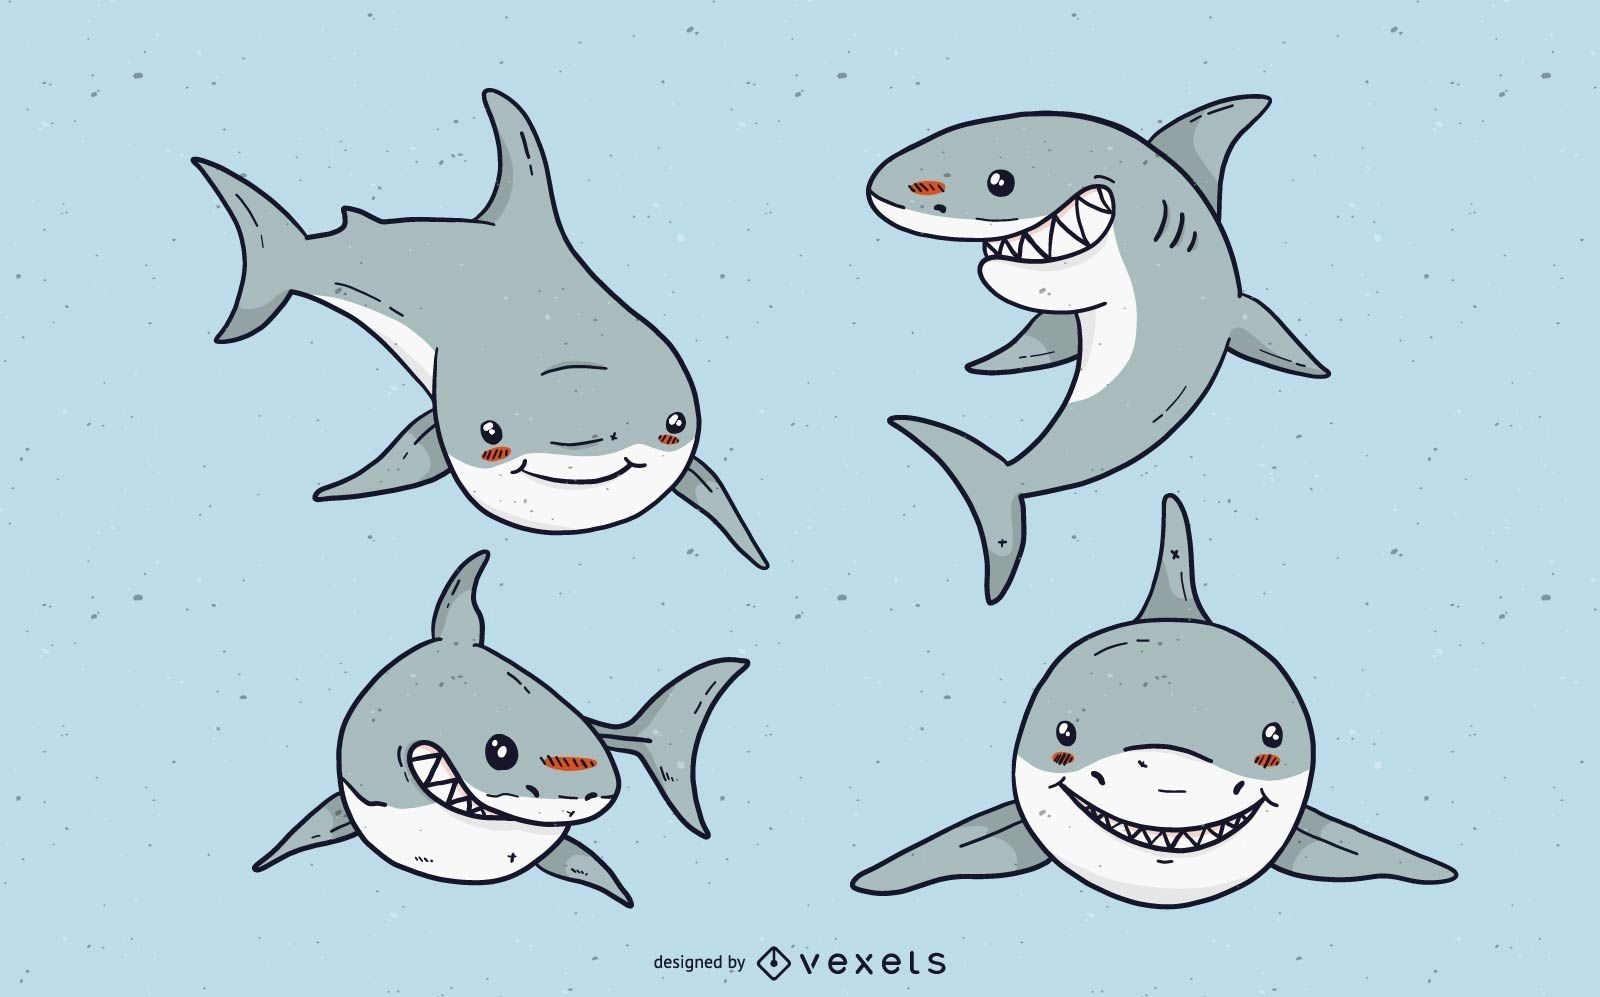 Conjunto de dibujos animados lindo tibur?n blanco